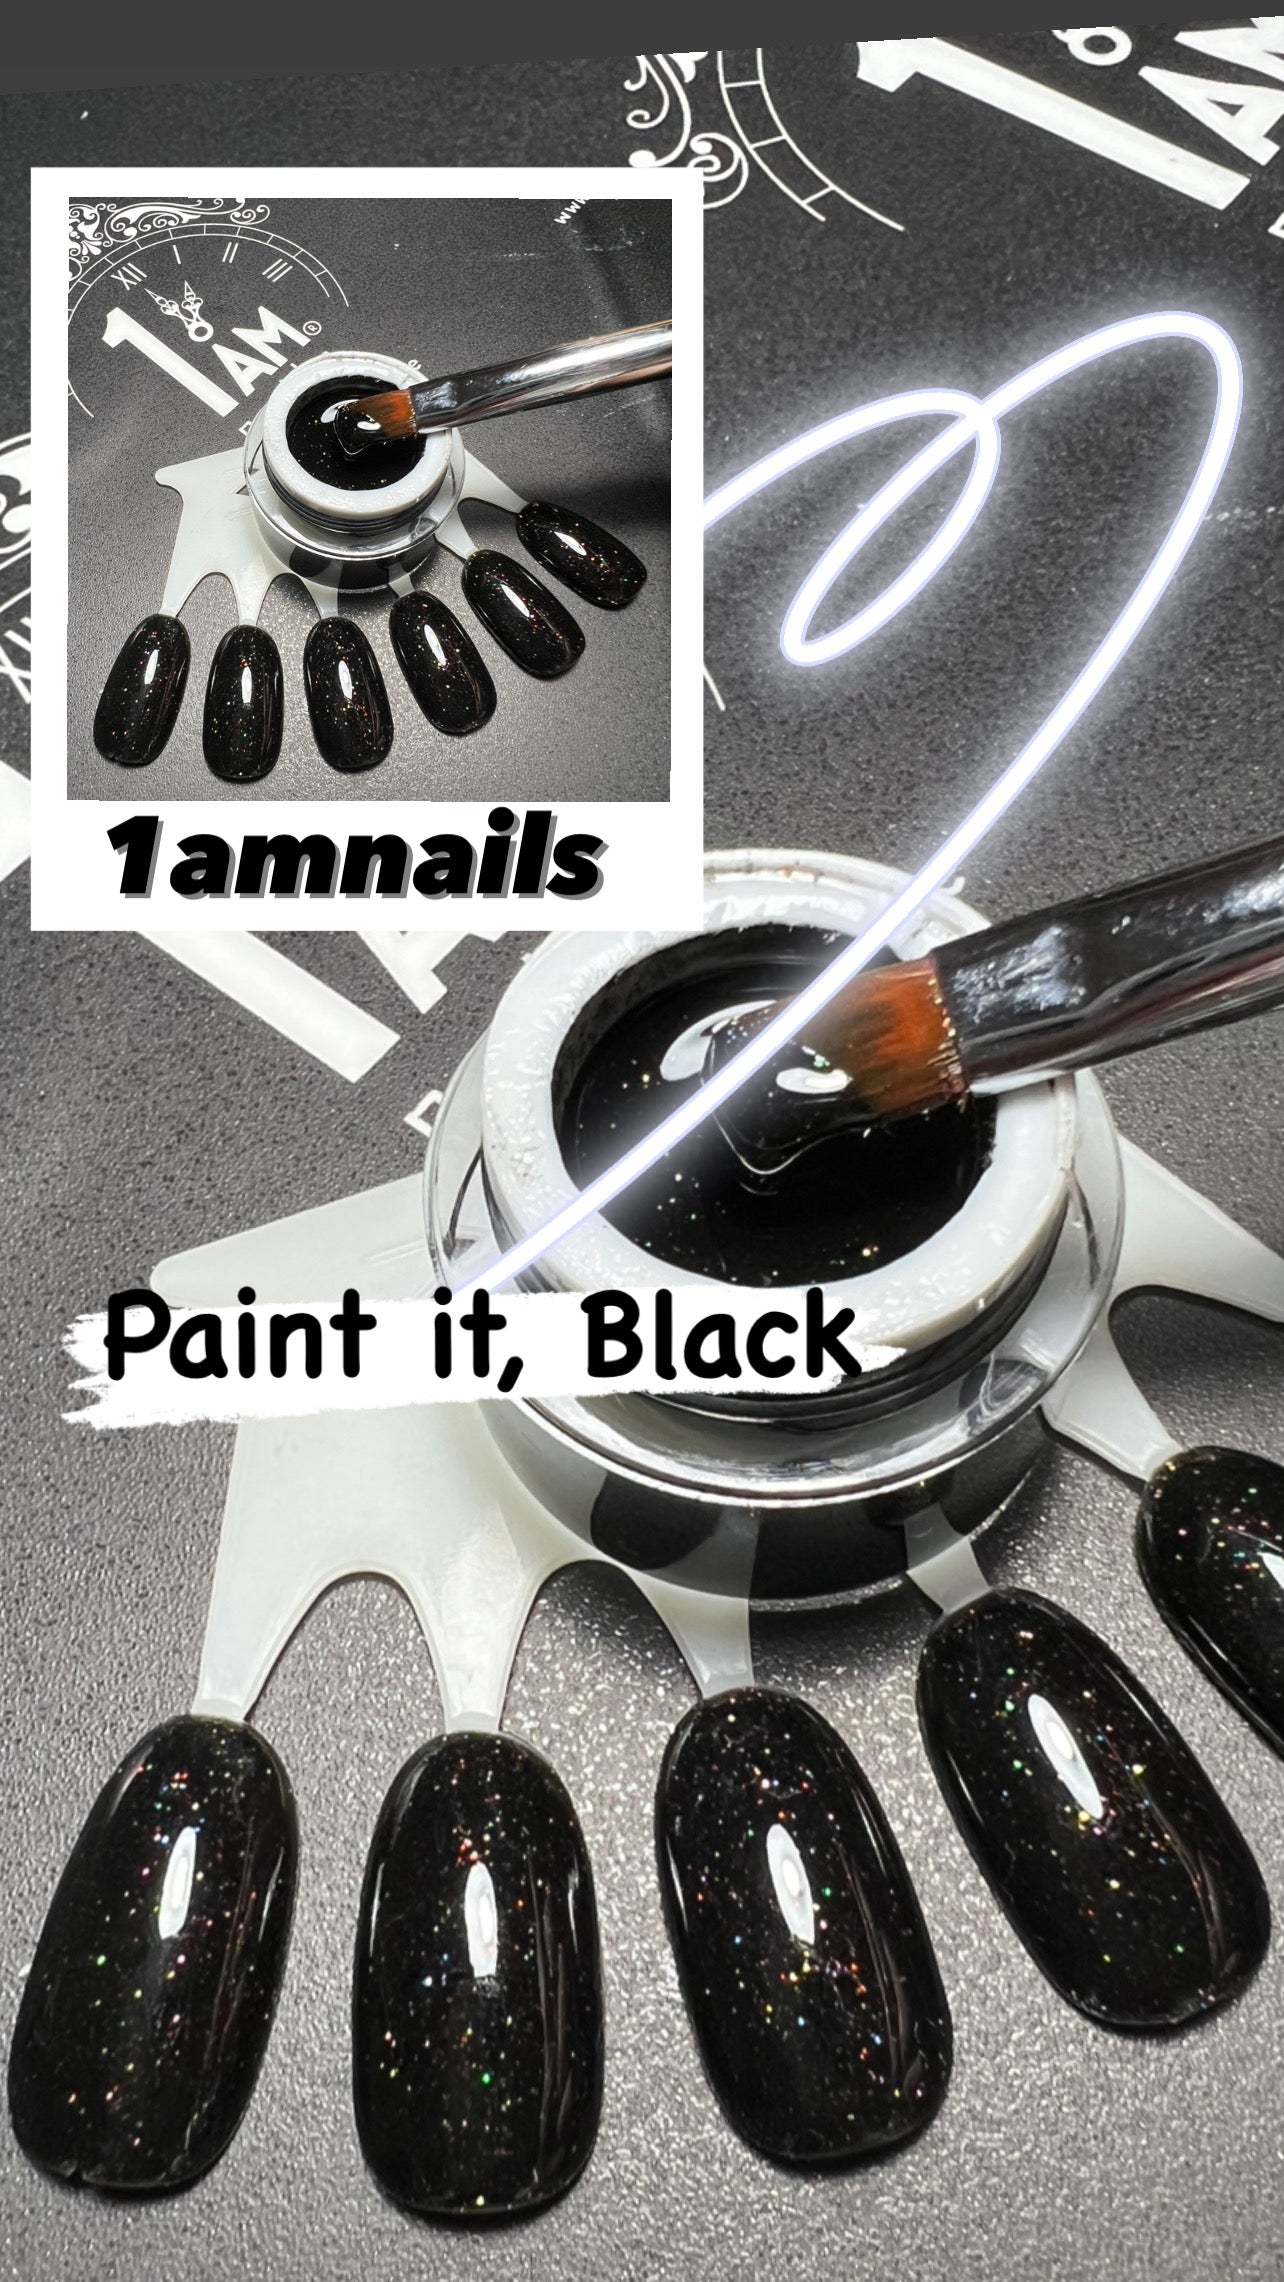 1AM | Paint it, Black